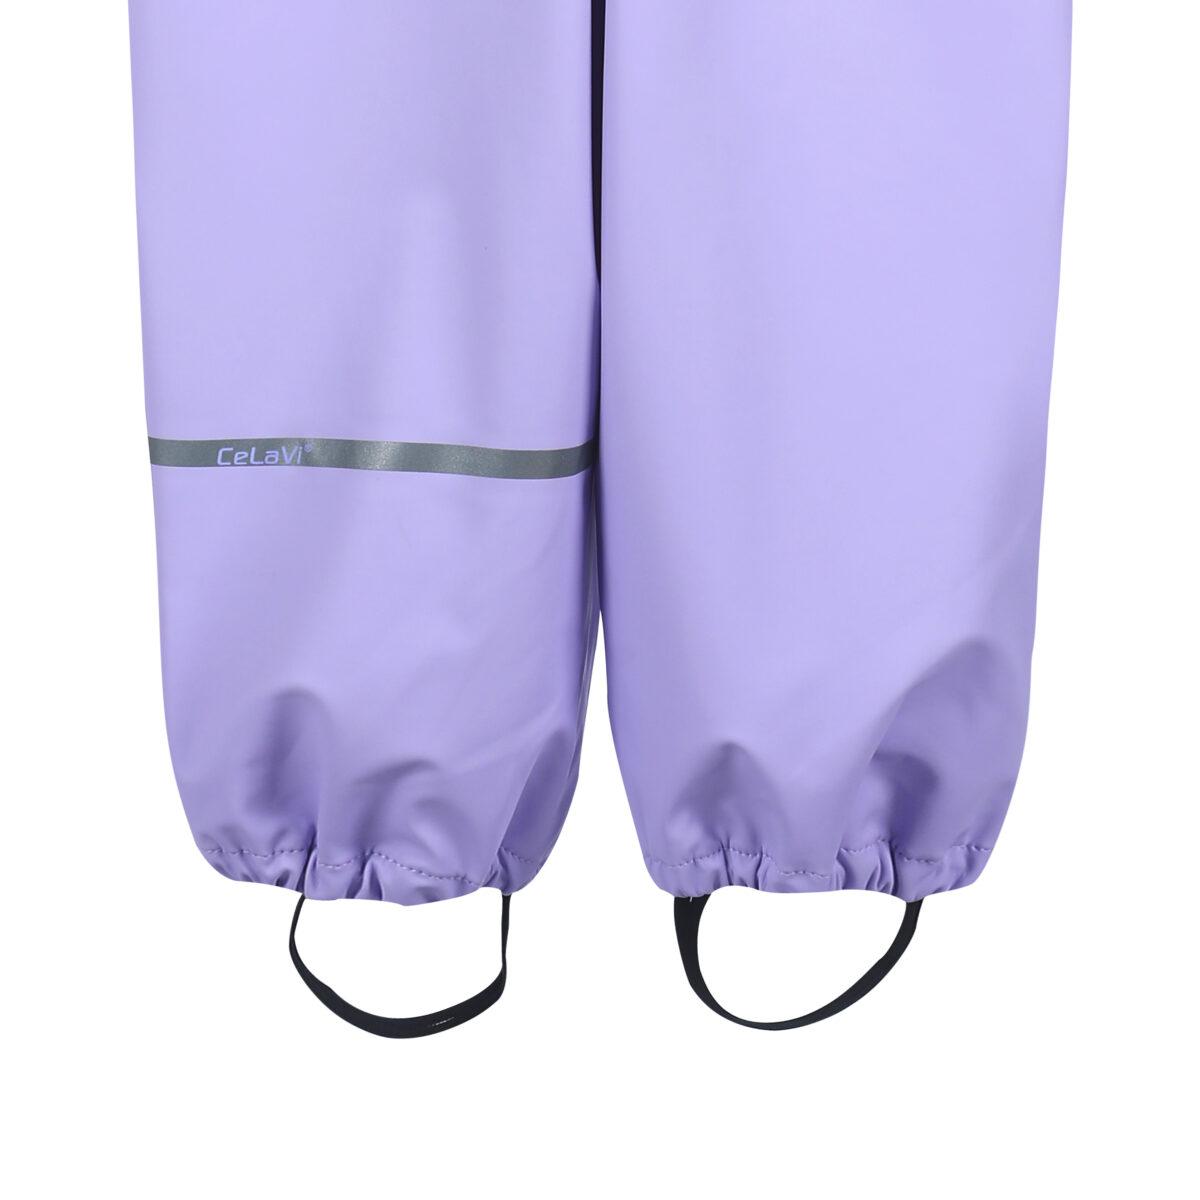 Celavi vihmakomplekt, Purple Rose Lasteriided - HellyK - Kvaliteetsed lasteriided, villariided, barefoot jalatsid